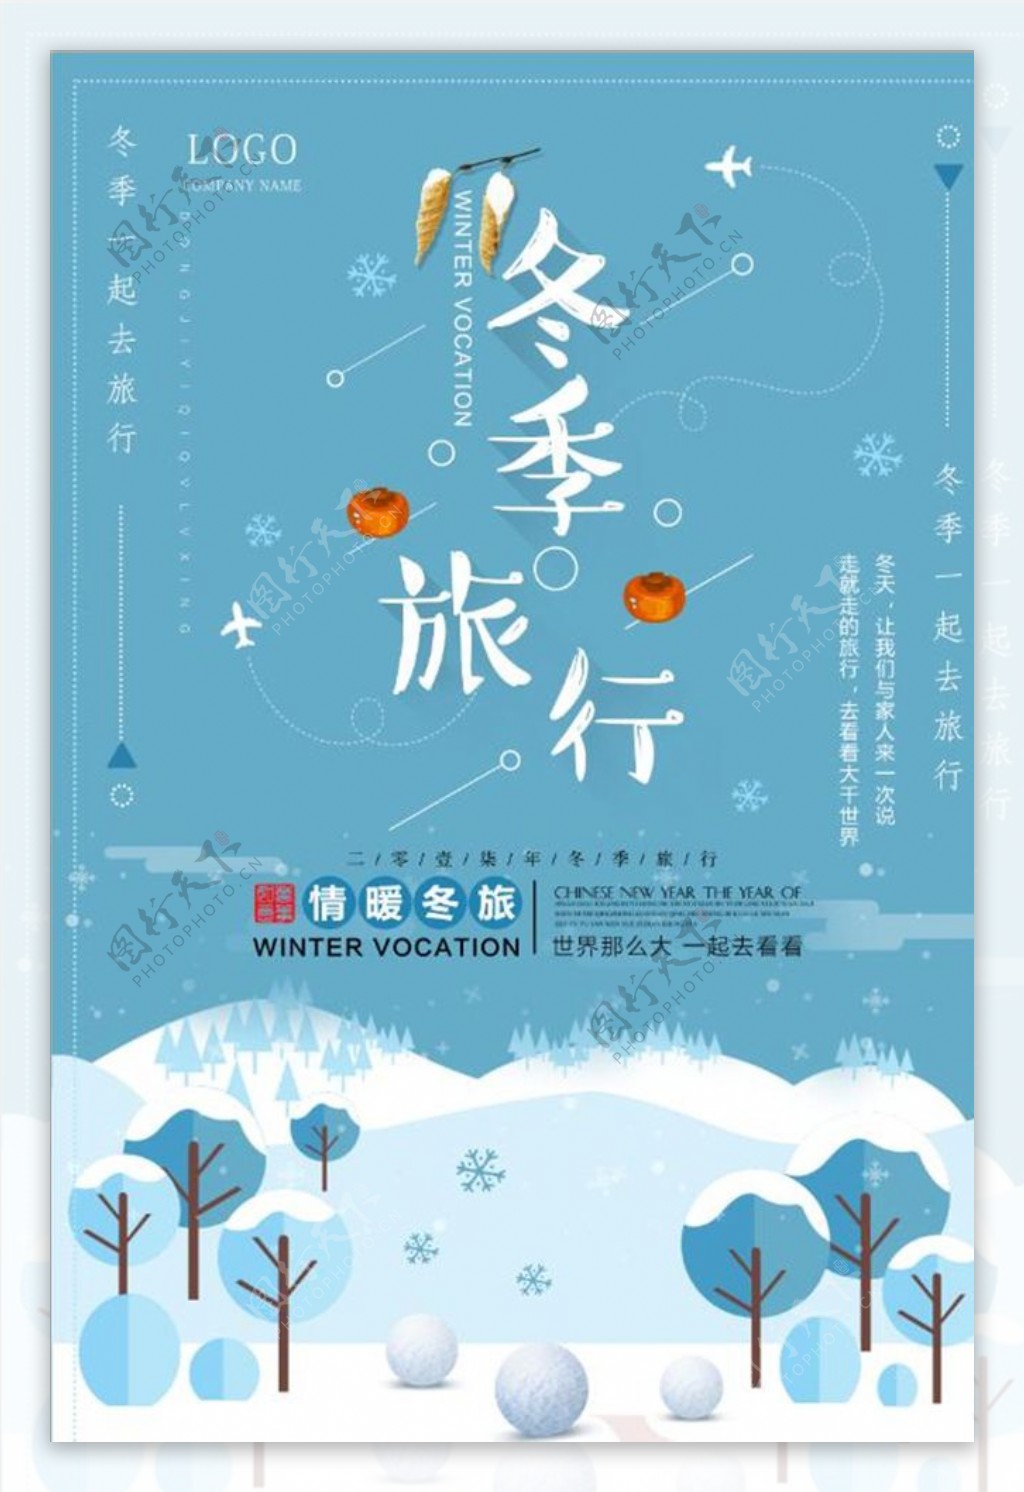 扁平化简约冬季旅游海报设计